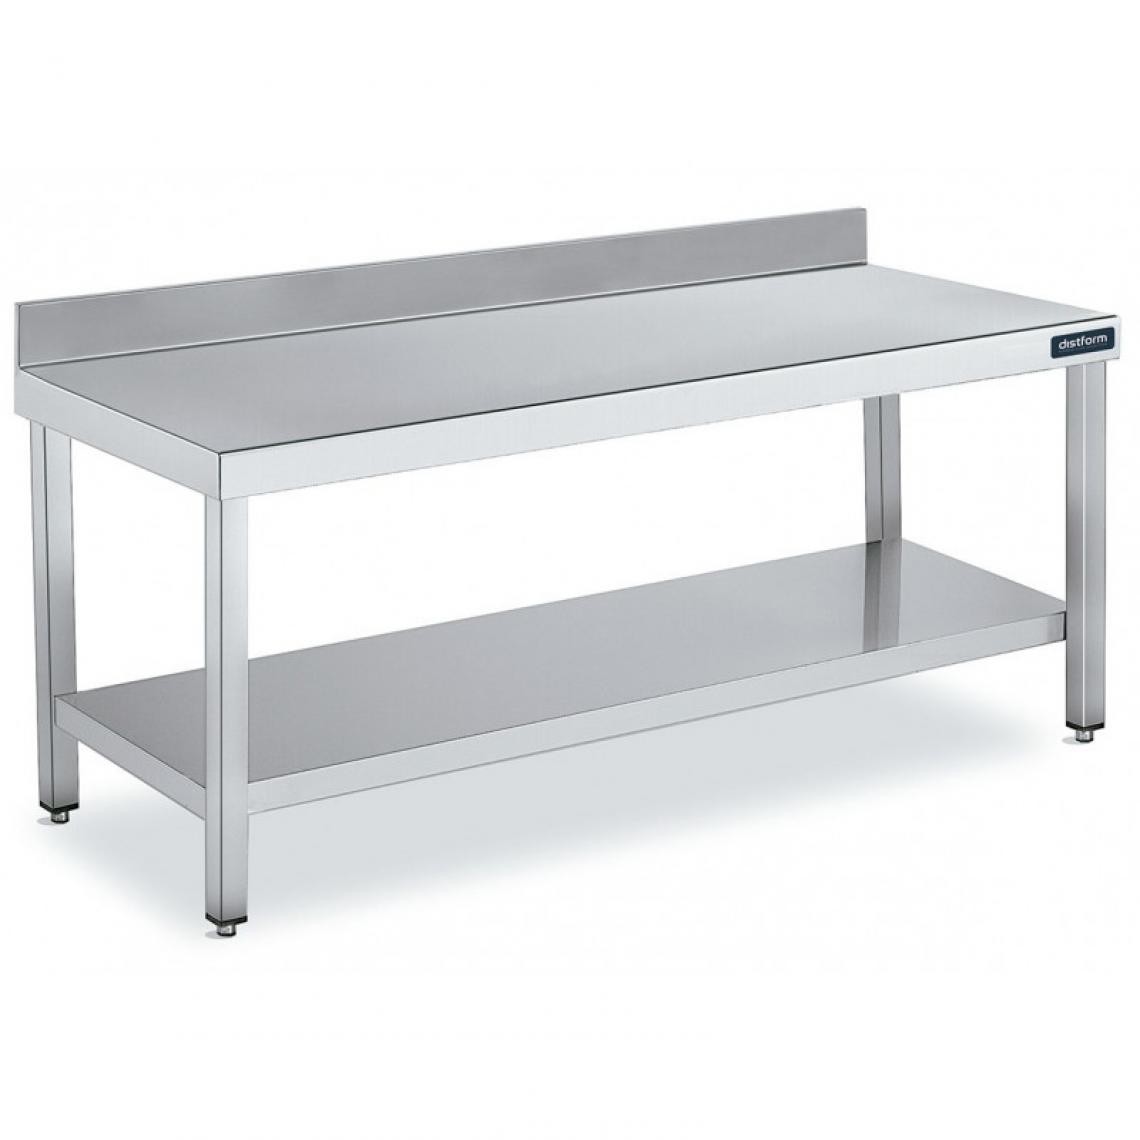 DISTFORM - Table Adossée en Inox avec 1 étagère Profondeur 700 mm - Distform - Acier inoxydable1100x700 - Tables à manger